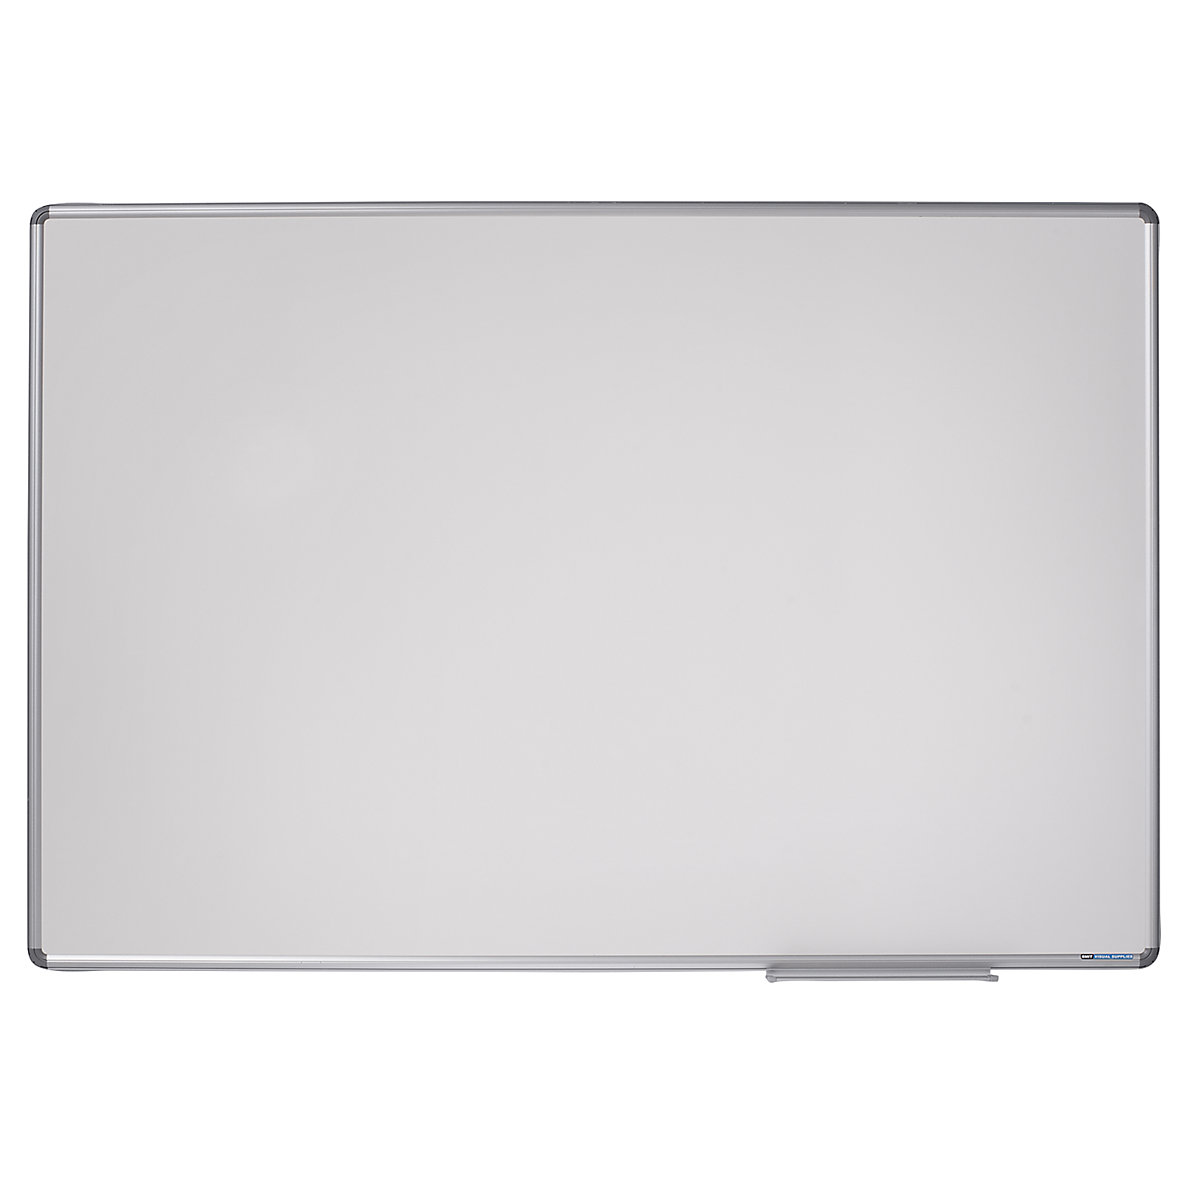 Designer notice board – eurokraft pro, sheet steel, enamel, WxH 900 x 600 mm-11